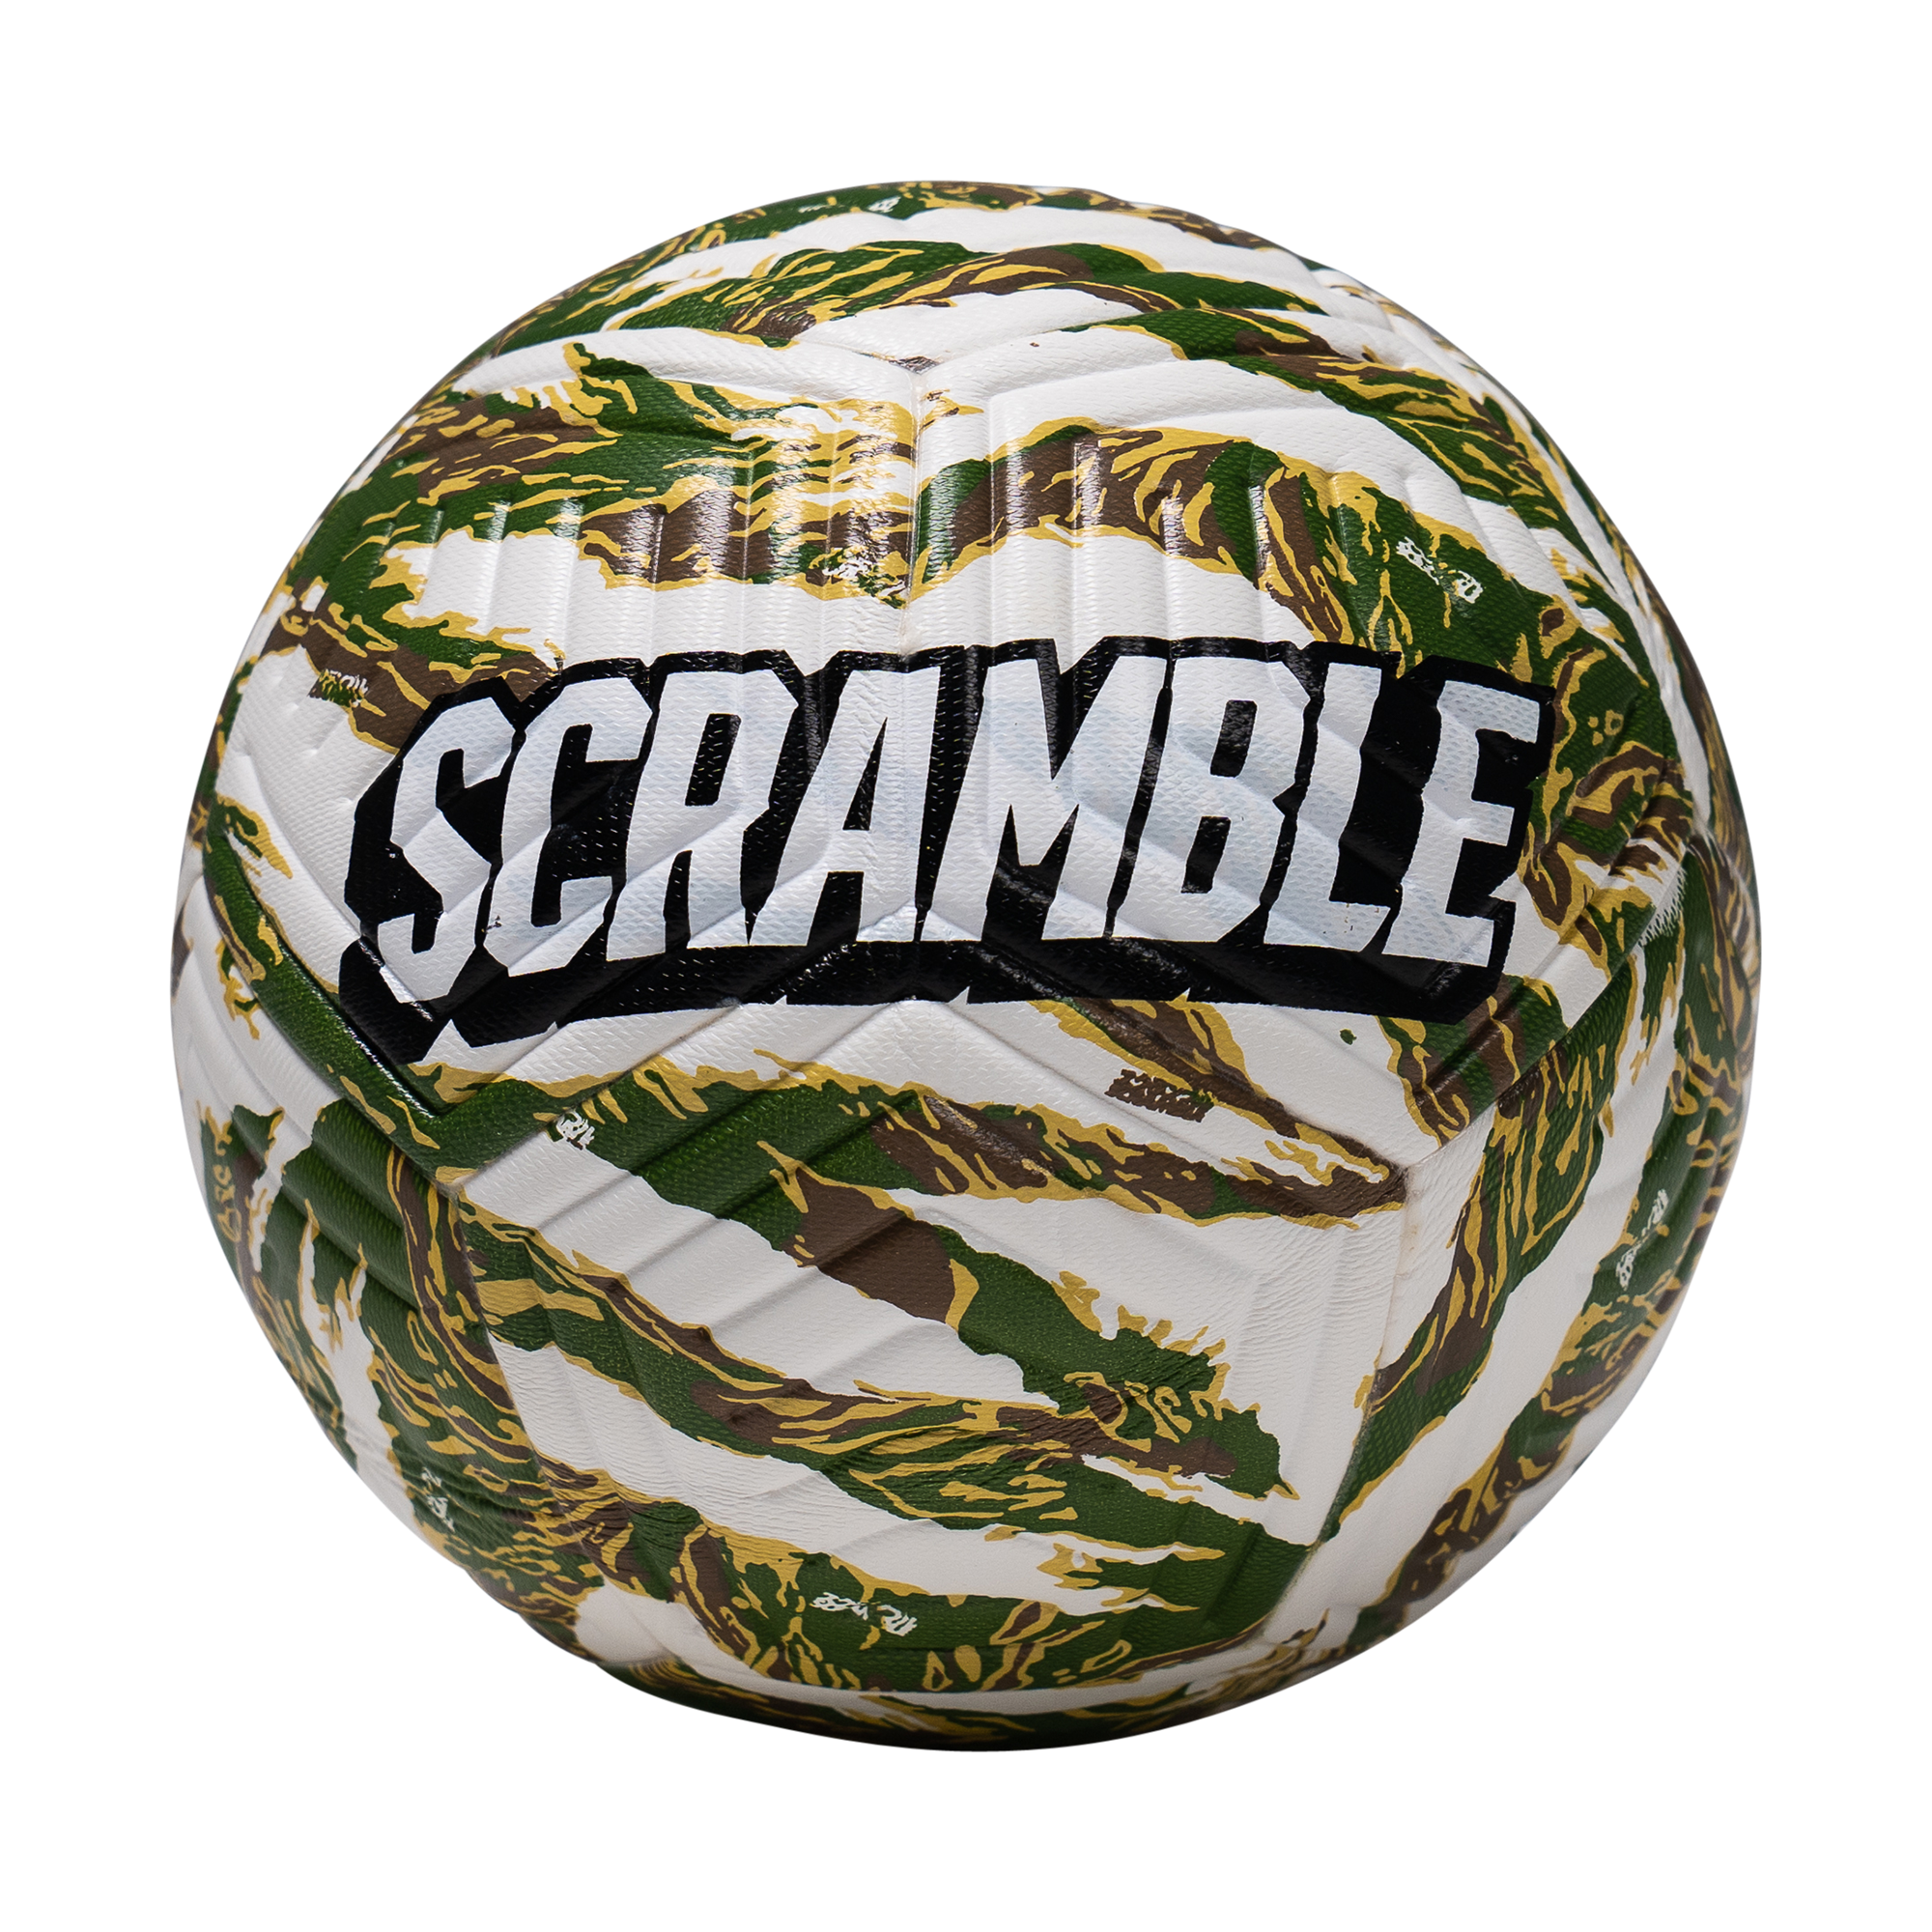 Scramball